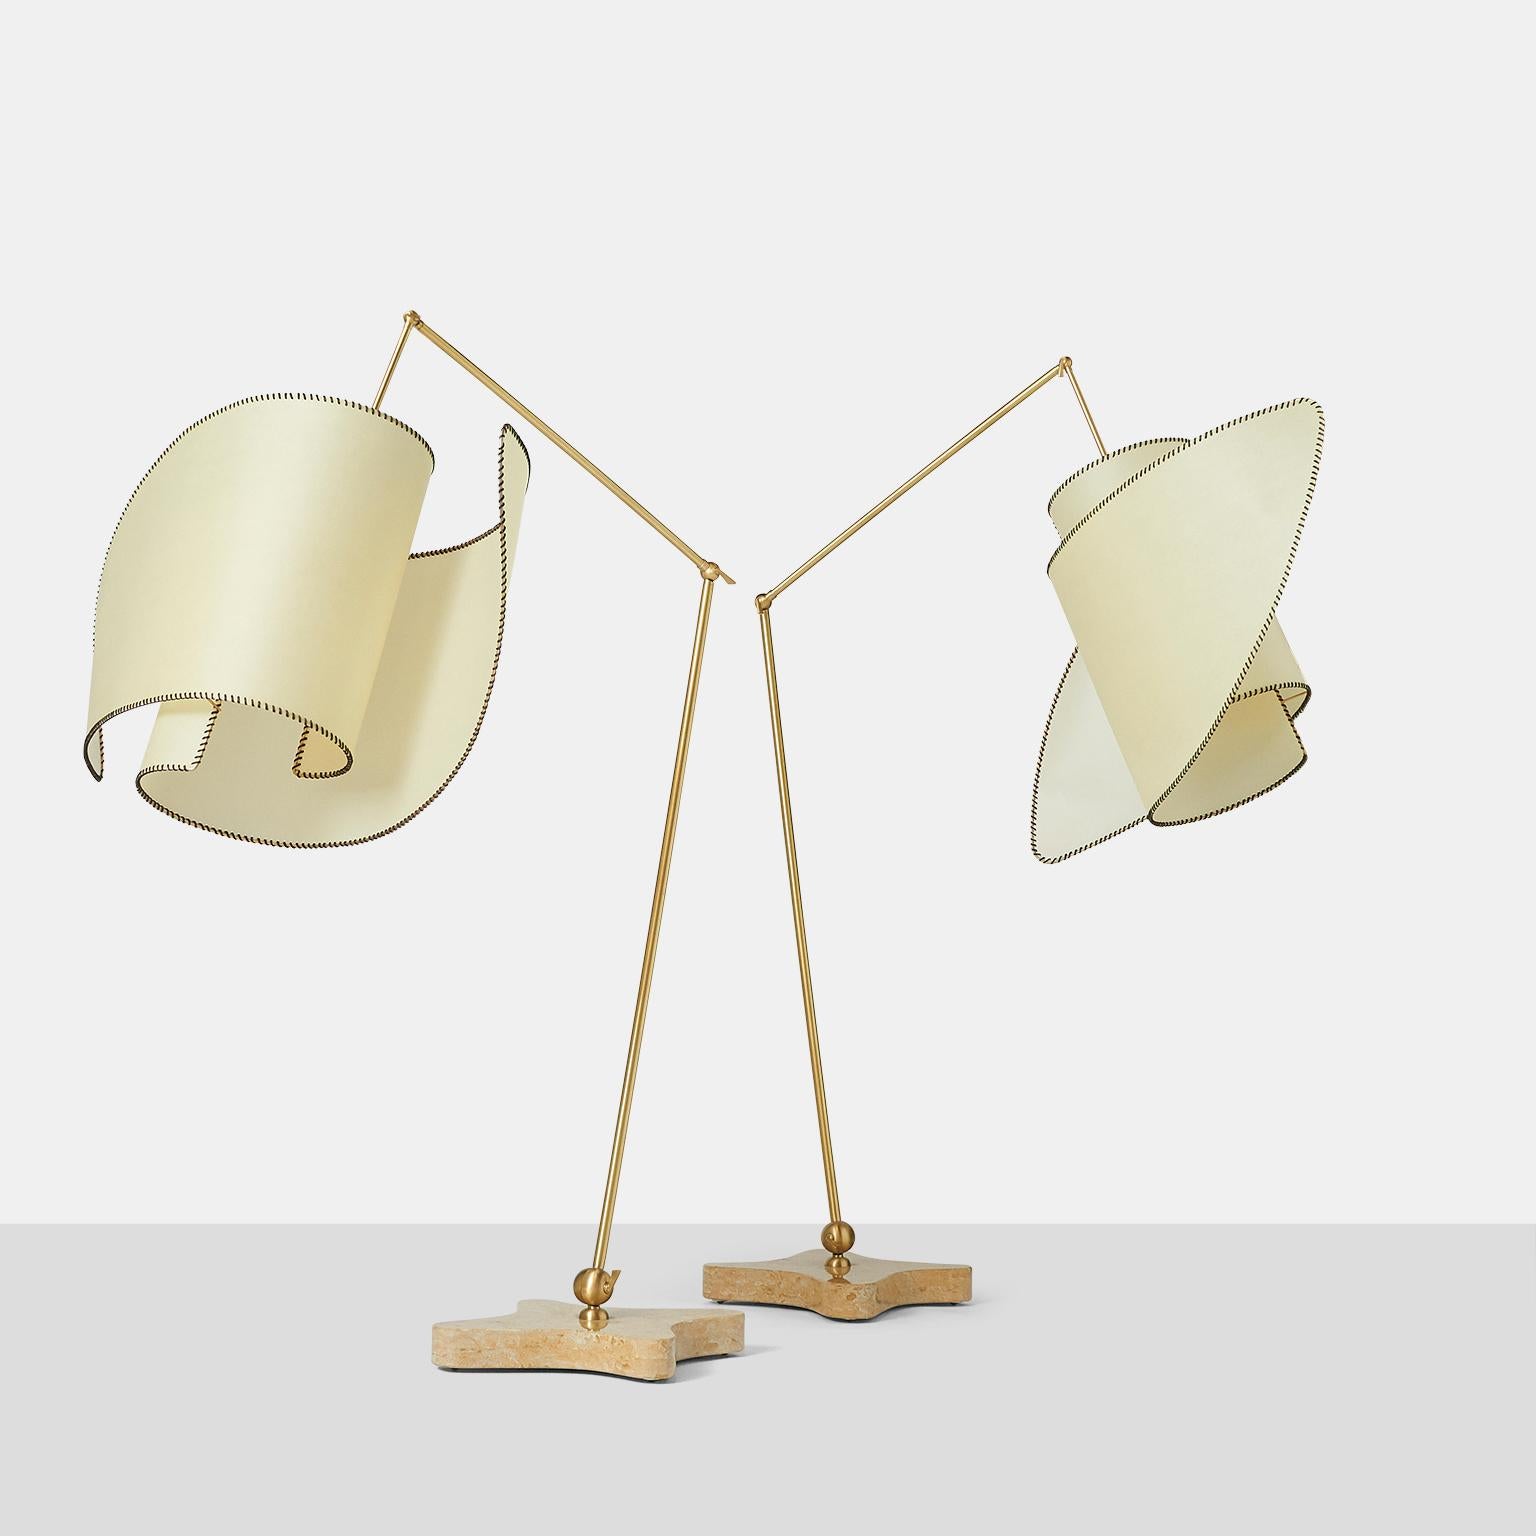 Pair of "Suora" Floor Lamps by Carlo Mollino